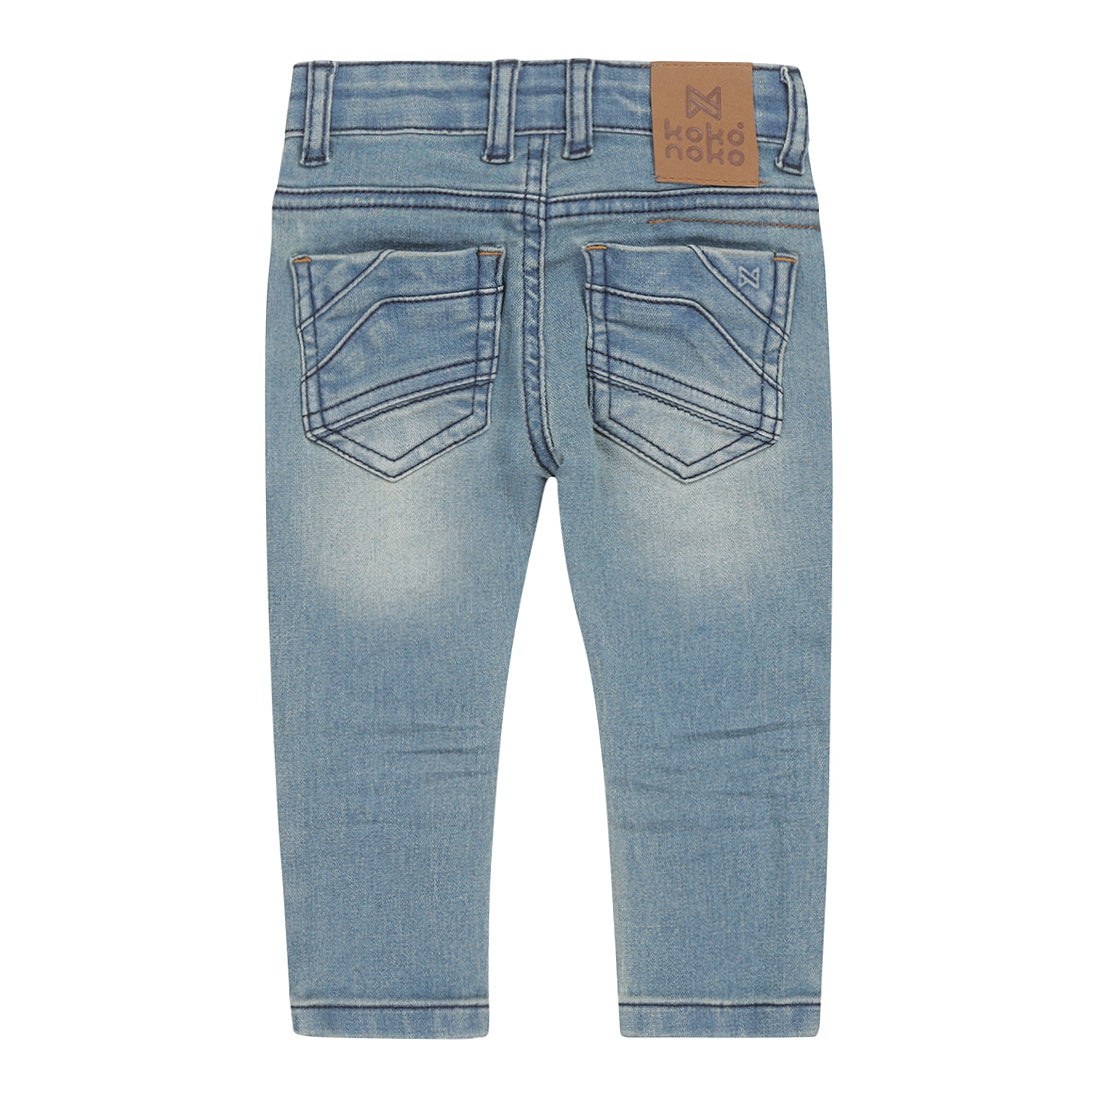 Jongens Jeans skinny van Koko Noko in de kleur Blue jeans in maat 128.